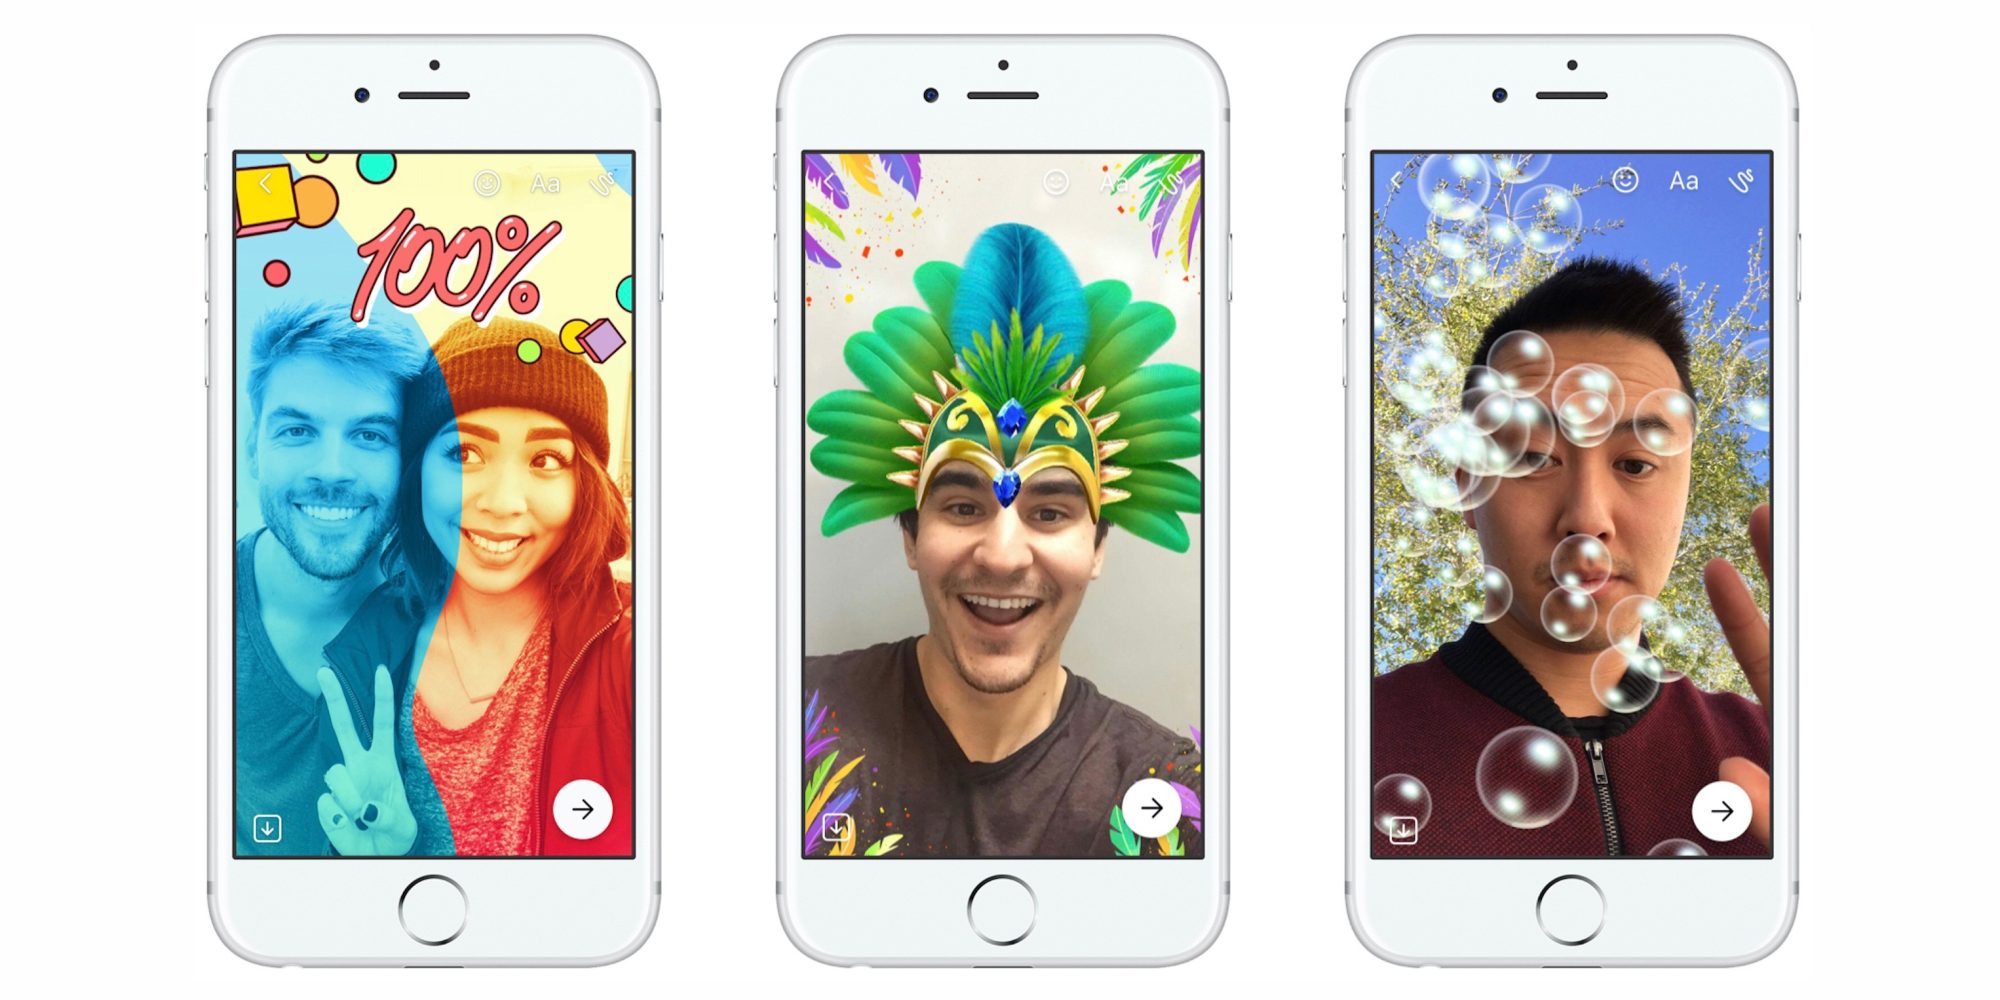 Mais um clone do Snapchat: Facebook lança no mundo todo o Messenger Day 09163320352261